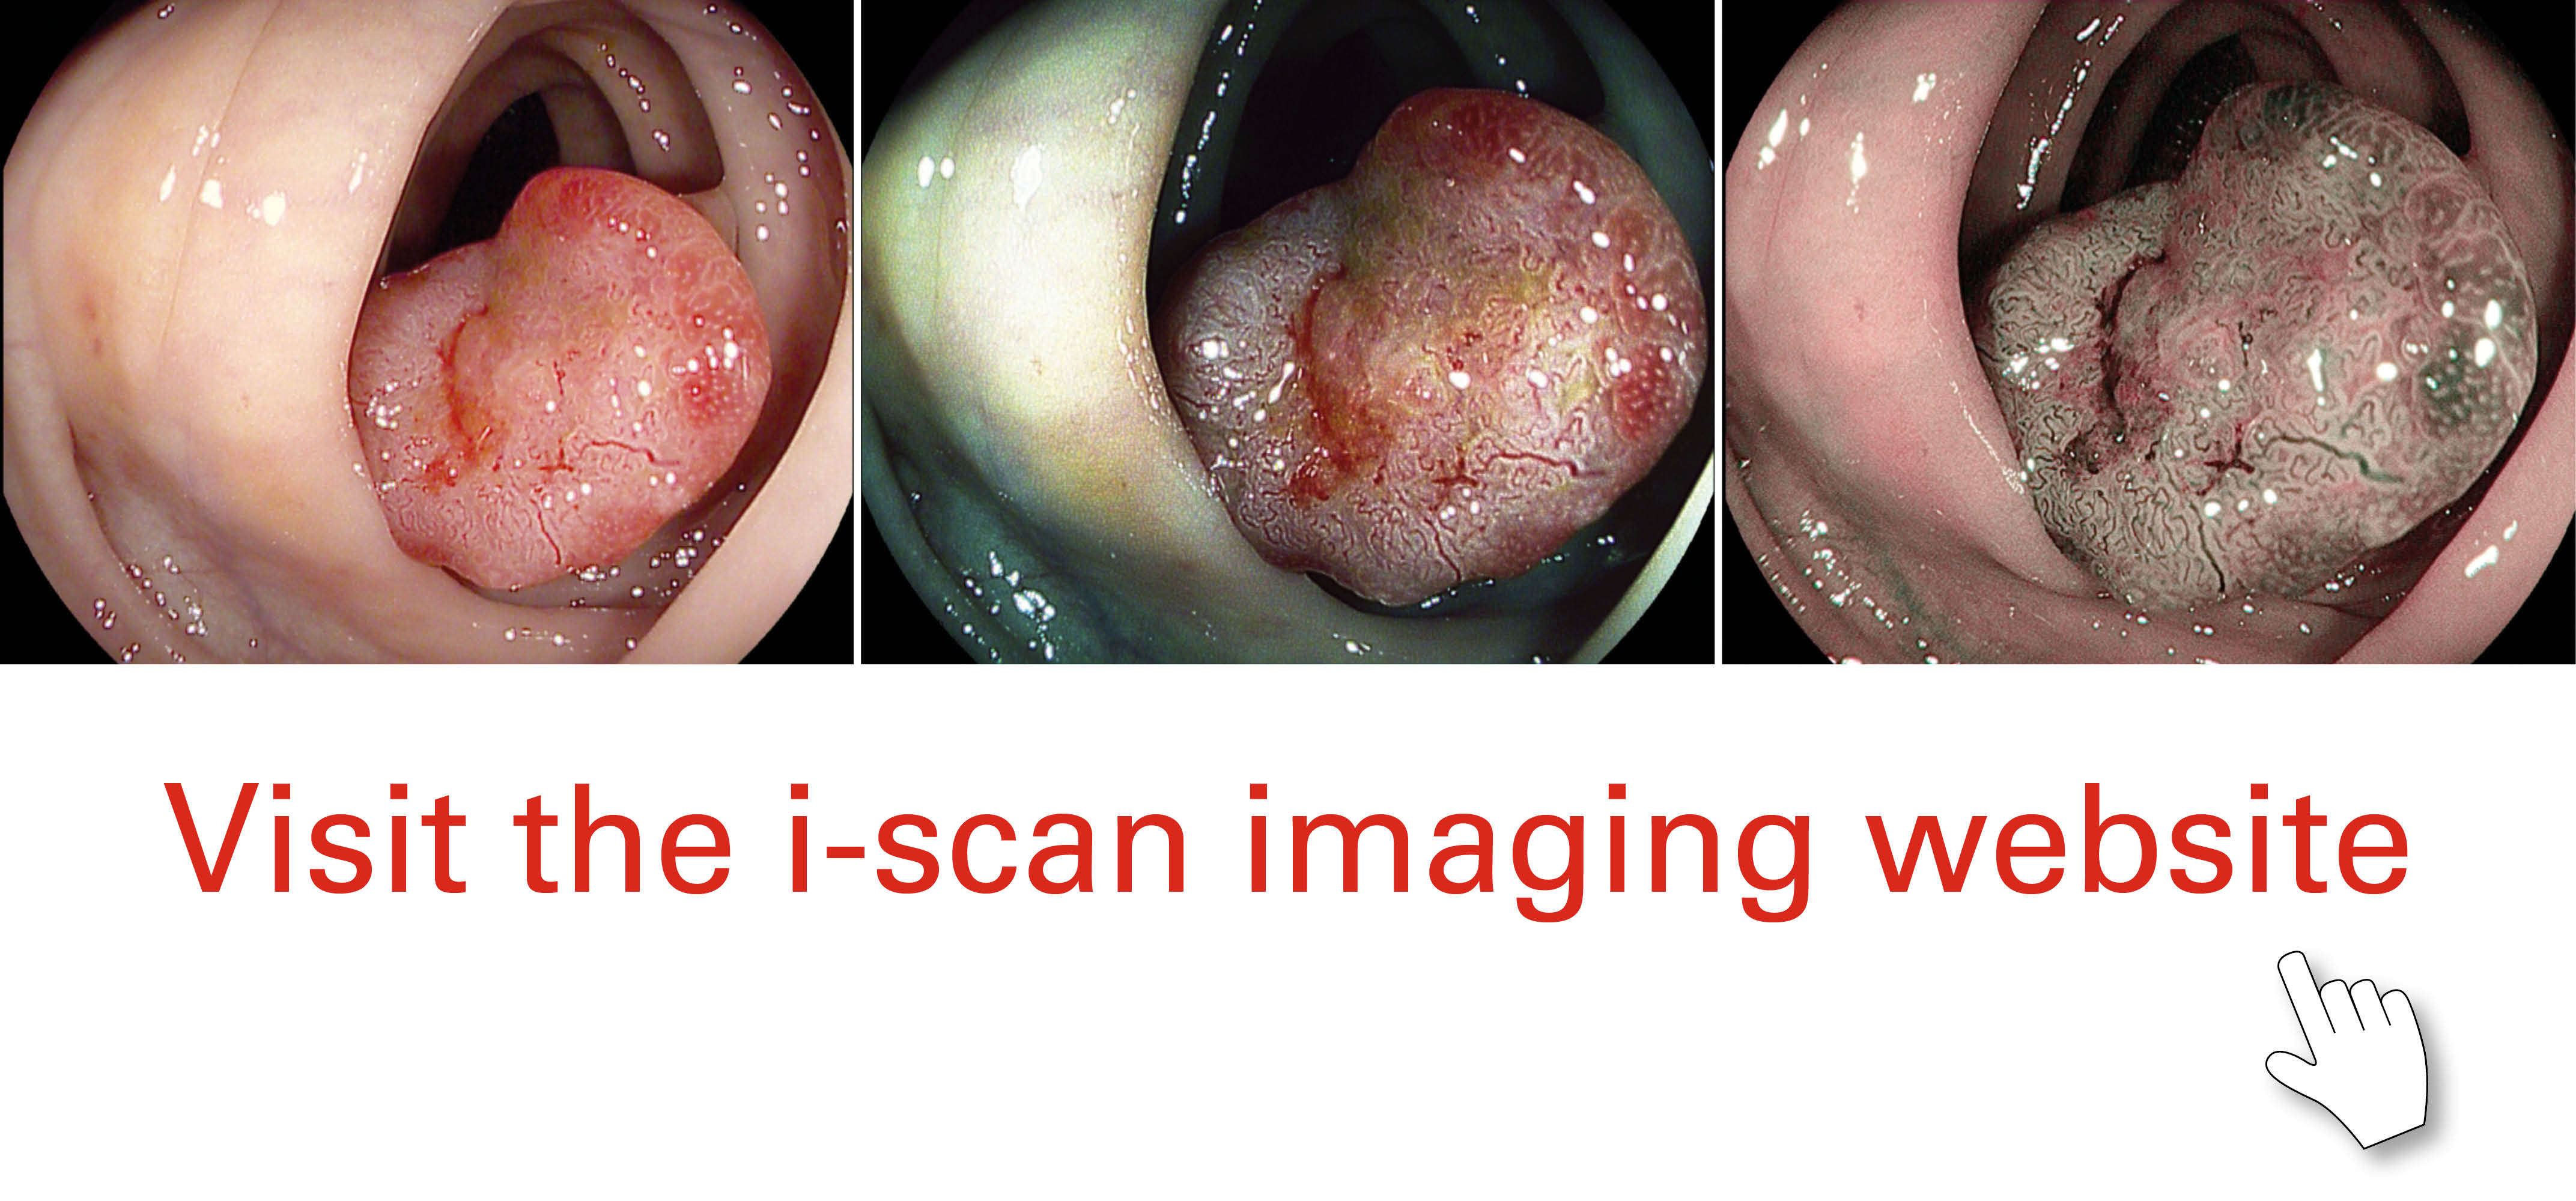 Visit the i-scan imaging website